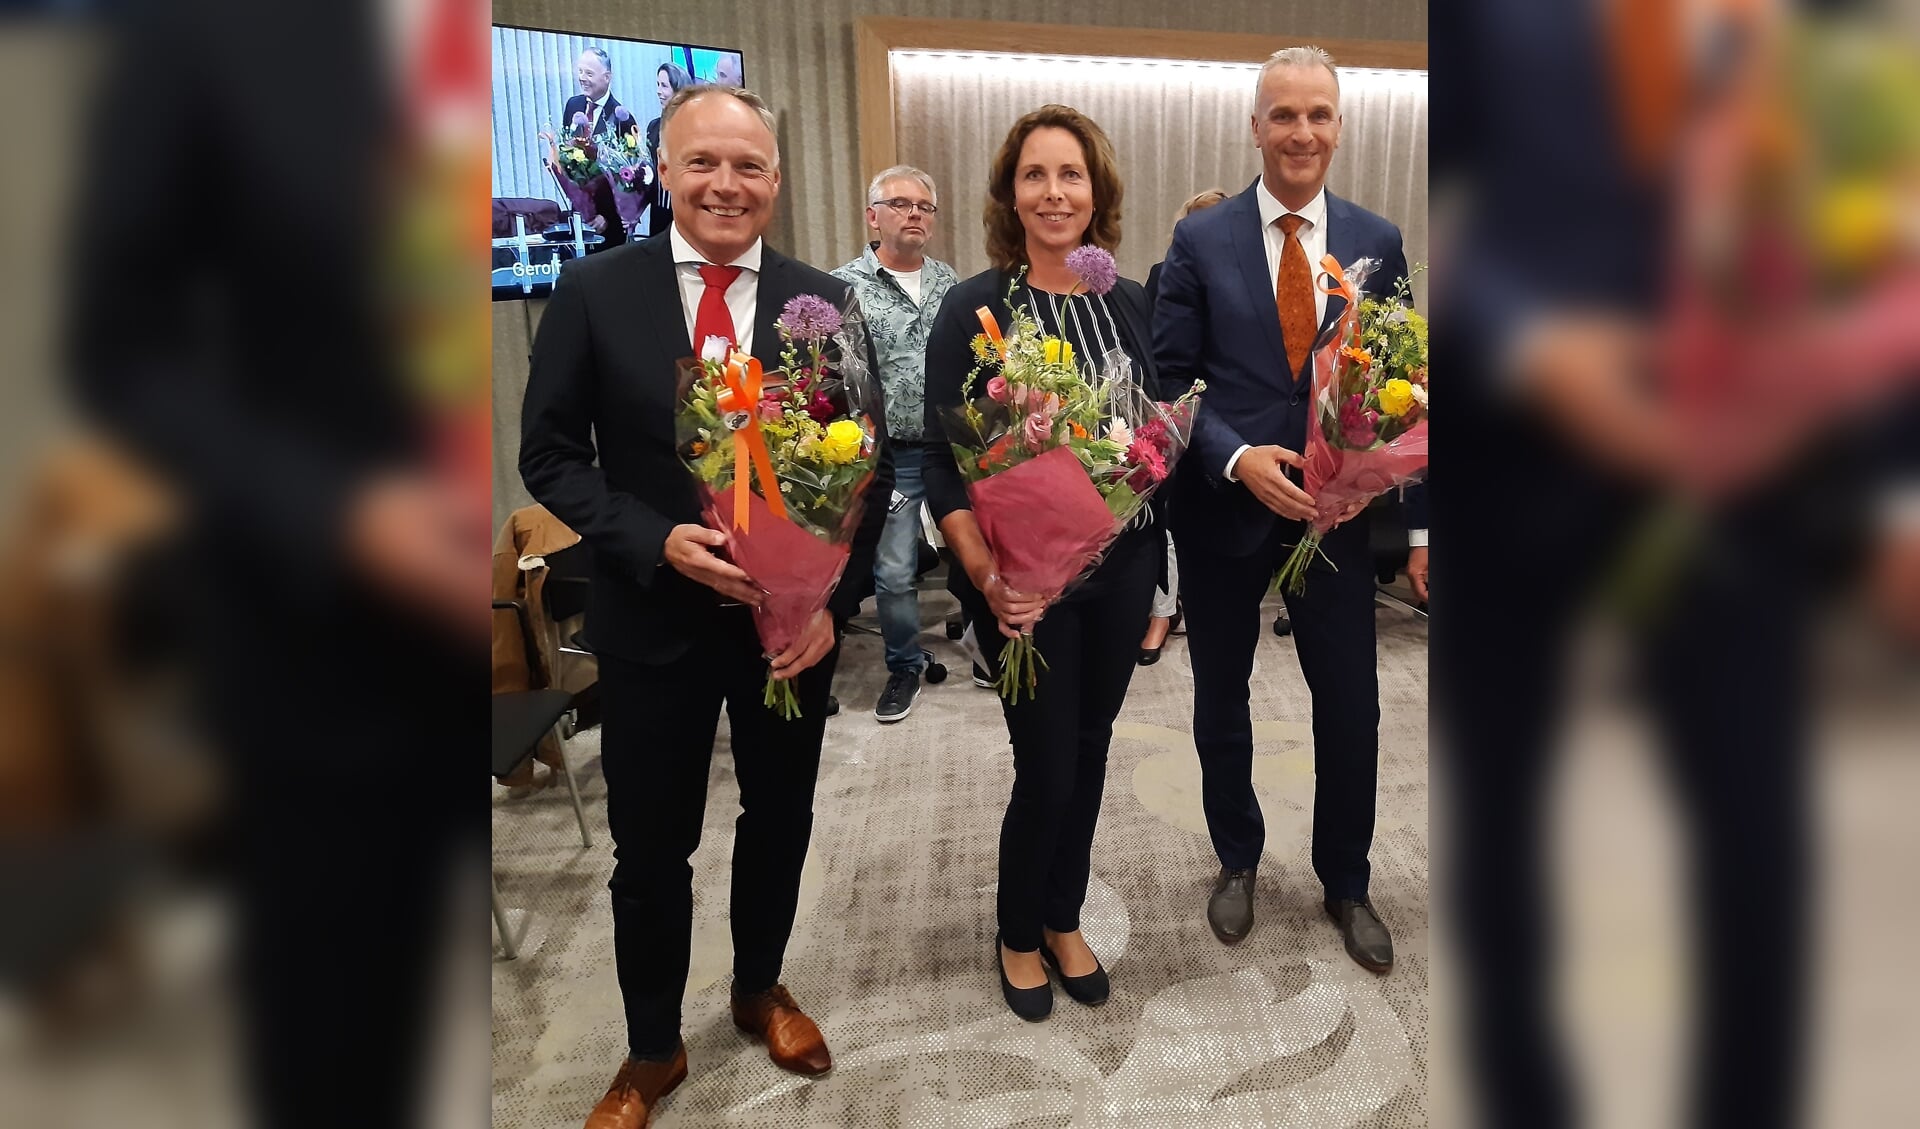 De drie wethouder bij hun installatie in juni, met van links naar rechts: Patrick Kiel (VVD), Alexandra Kolkman (Lokaal Belangrijk) en Wim Vos (CDA).